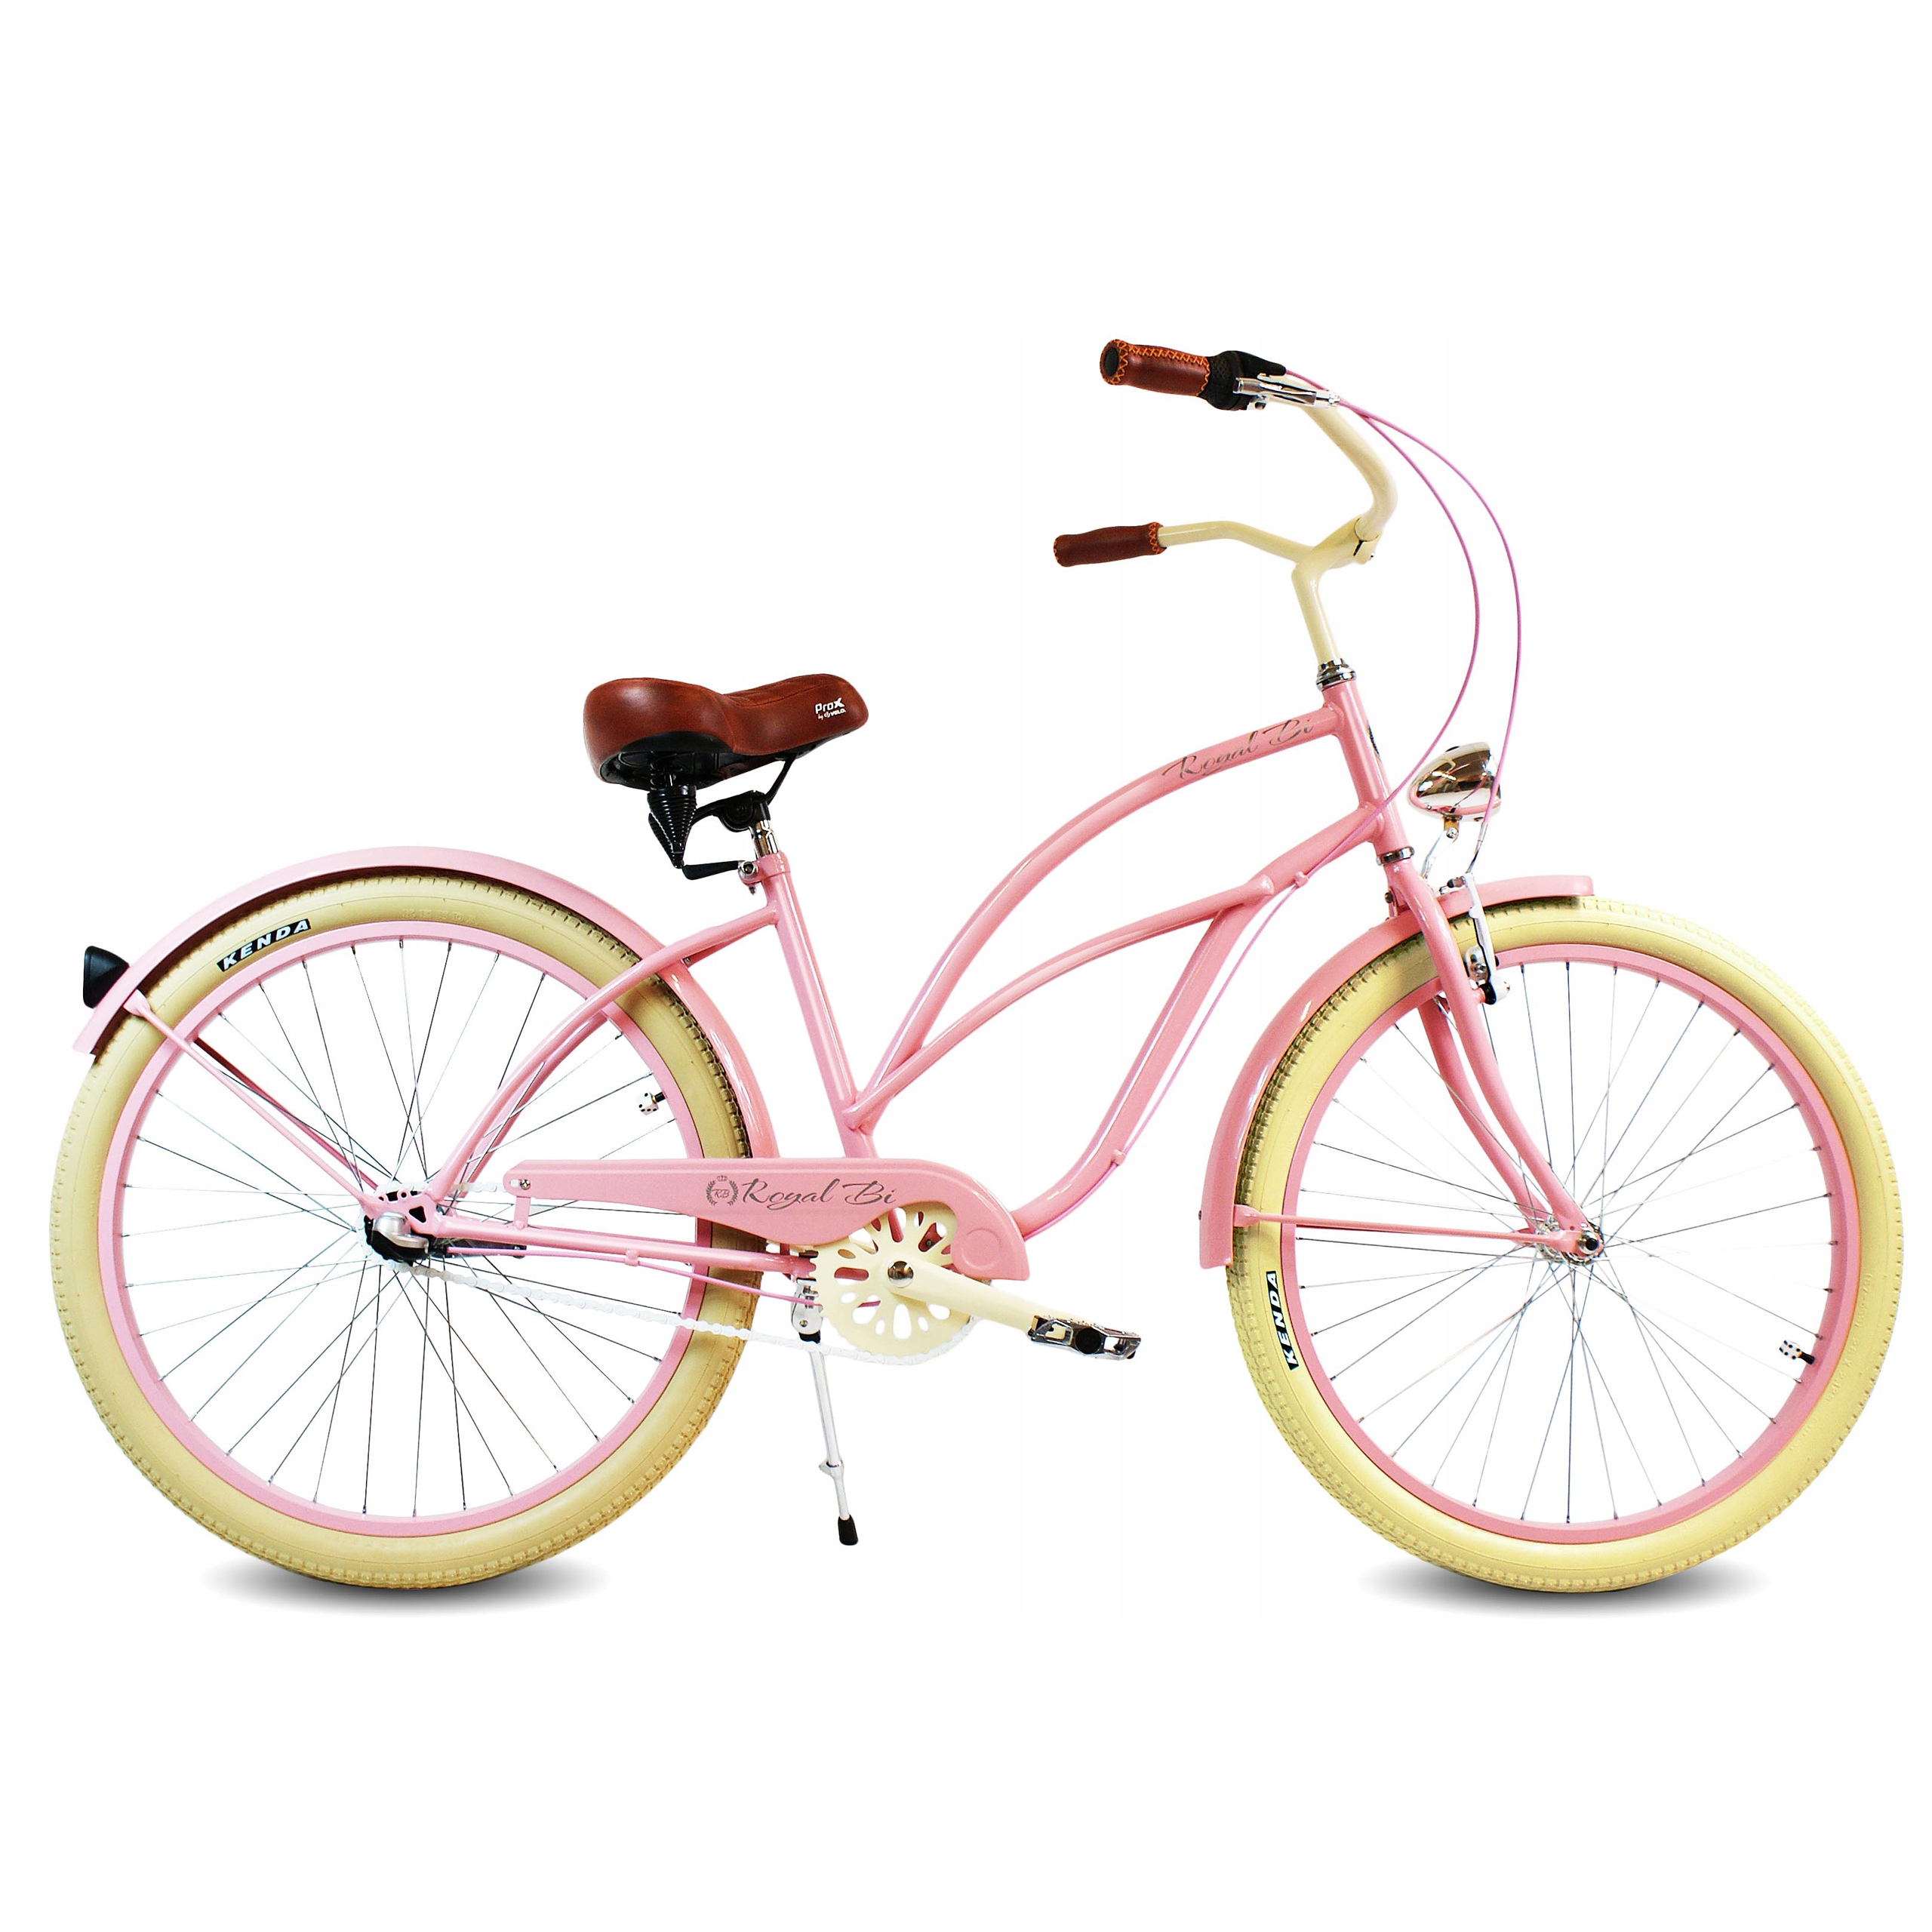 Велосипед женский stels розовый круизер. Стелс велосипед круизер розовый. Велосипед стелс женский круизер. Прогулочный велосипед стелс. Женская рама велосипеда купить